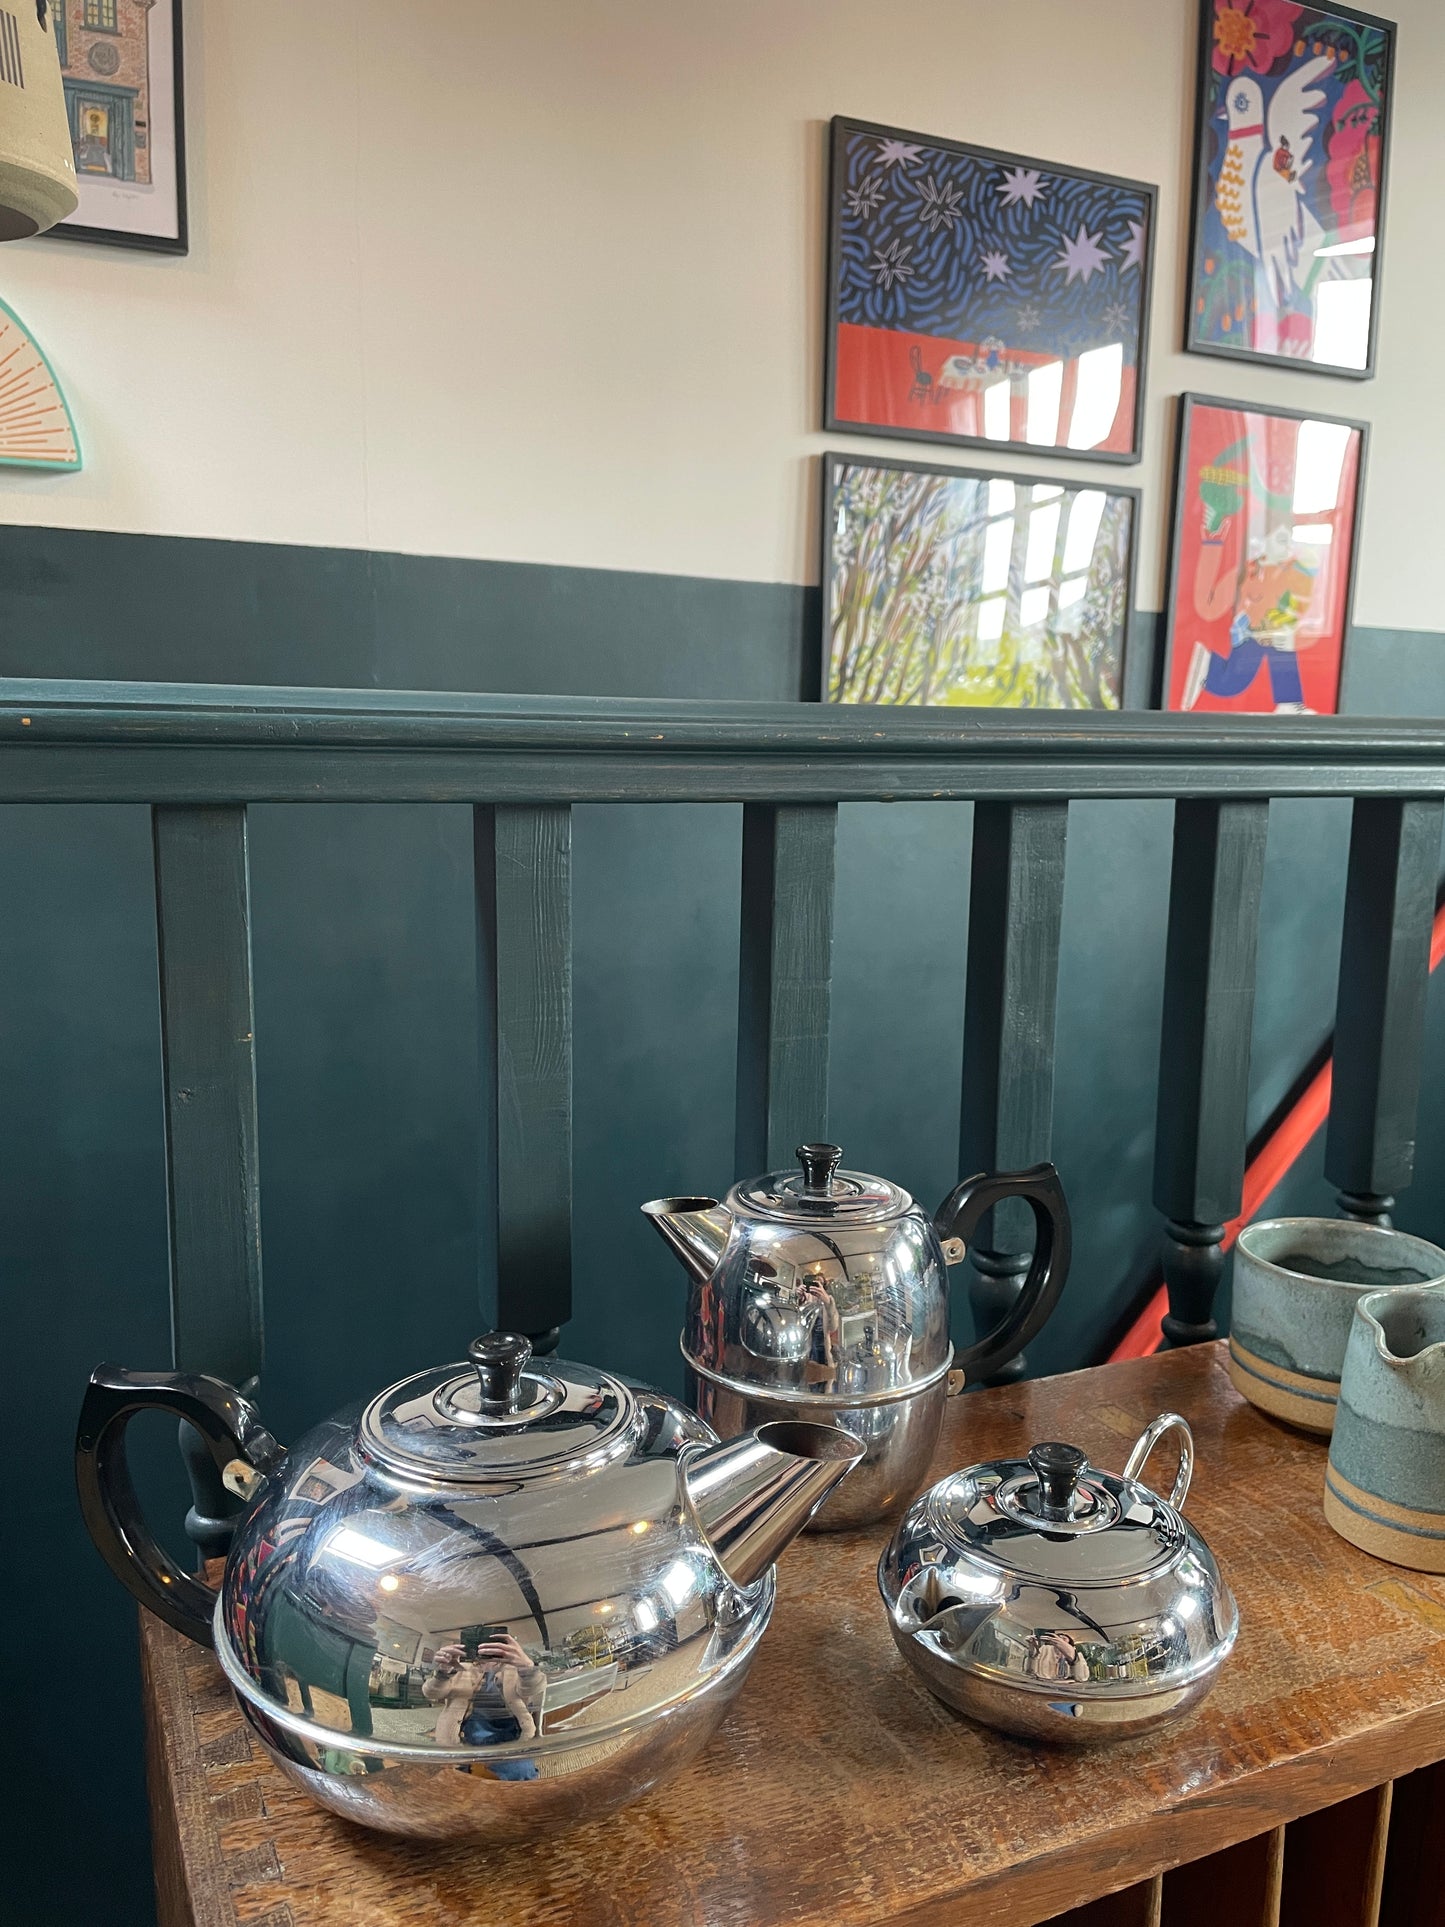 Britdis Tea Pot - 1-2 cup Made in NZ